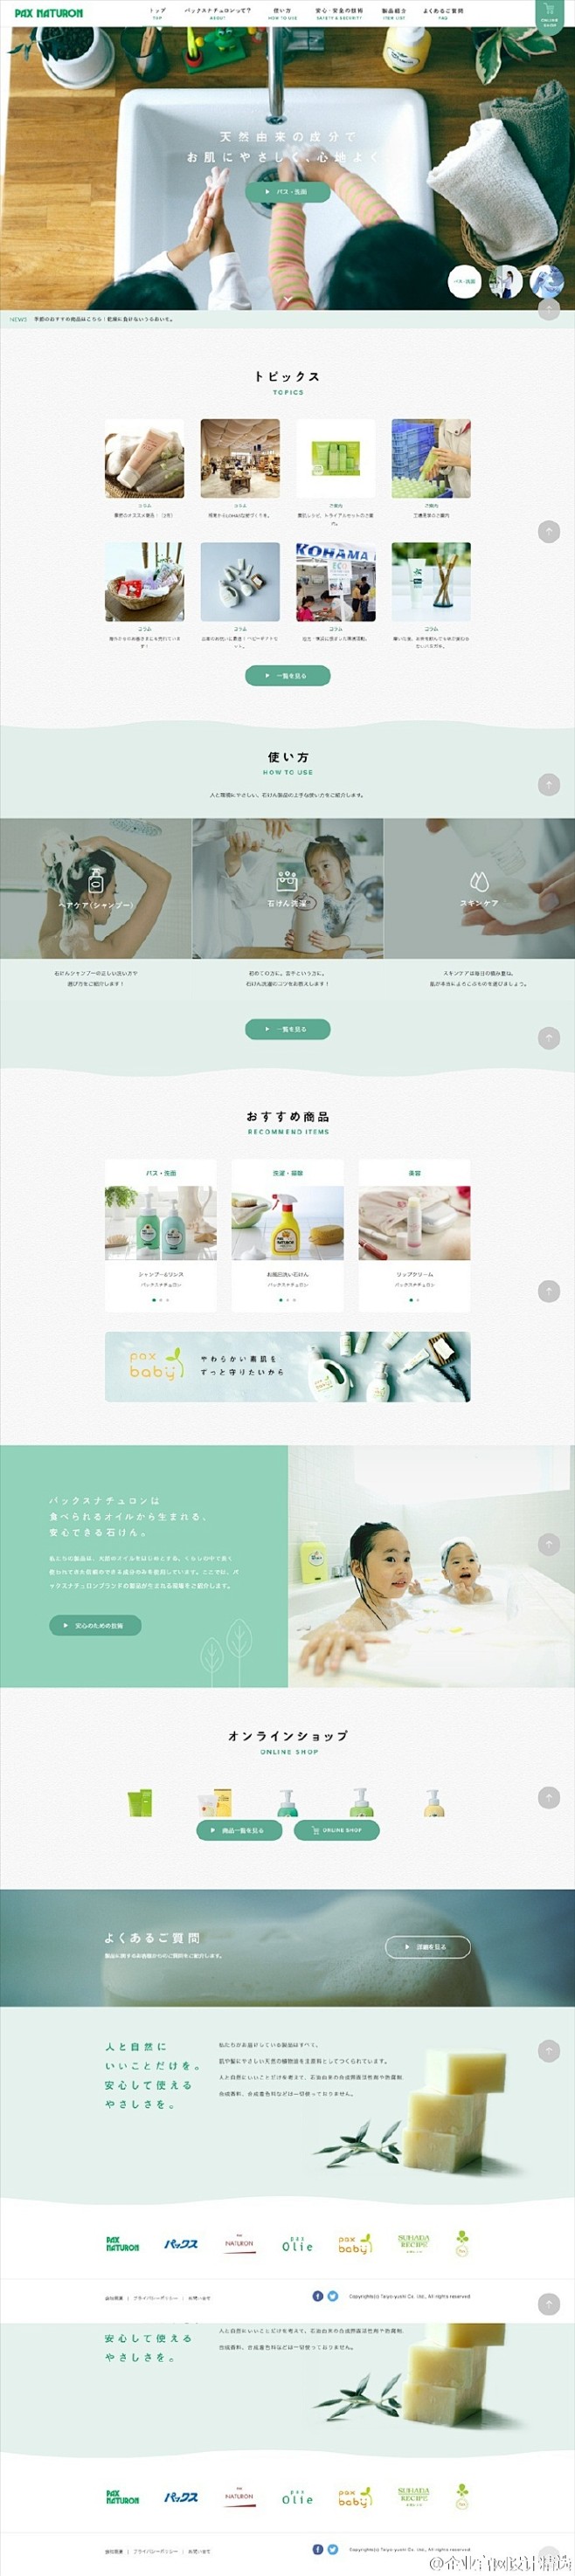 一个日本洗护/清洁用品公司的官网首页设计